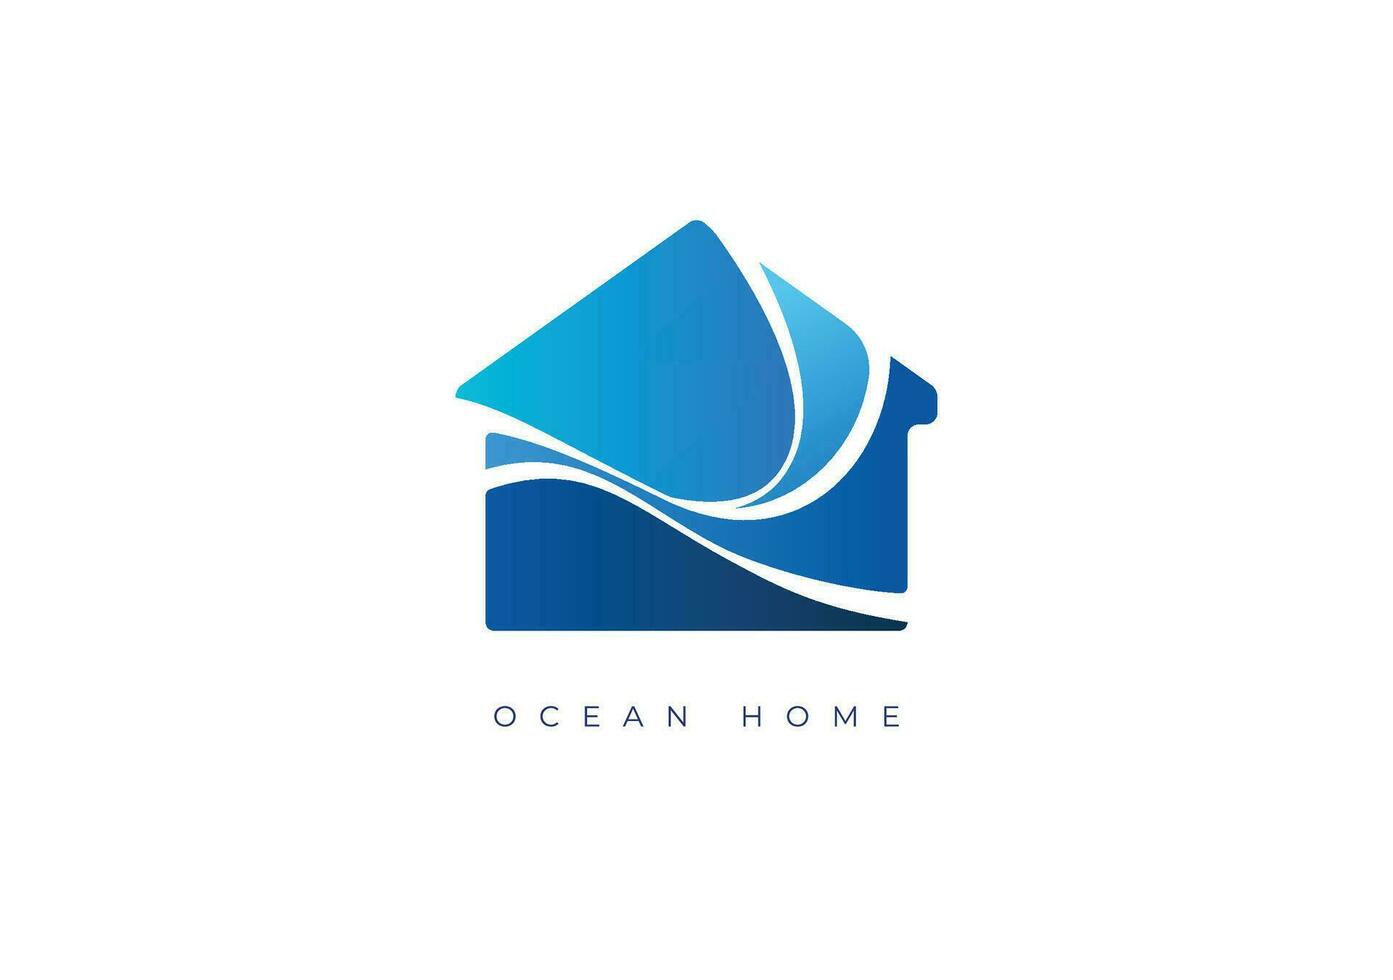 OCEAN HOME LOGO vector